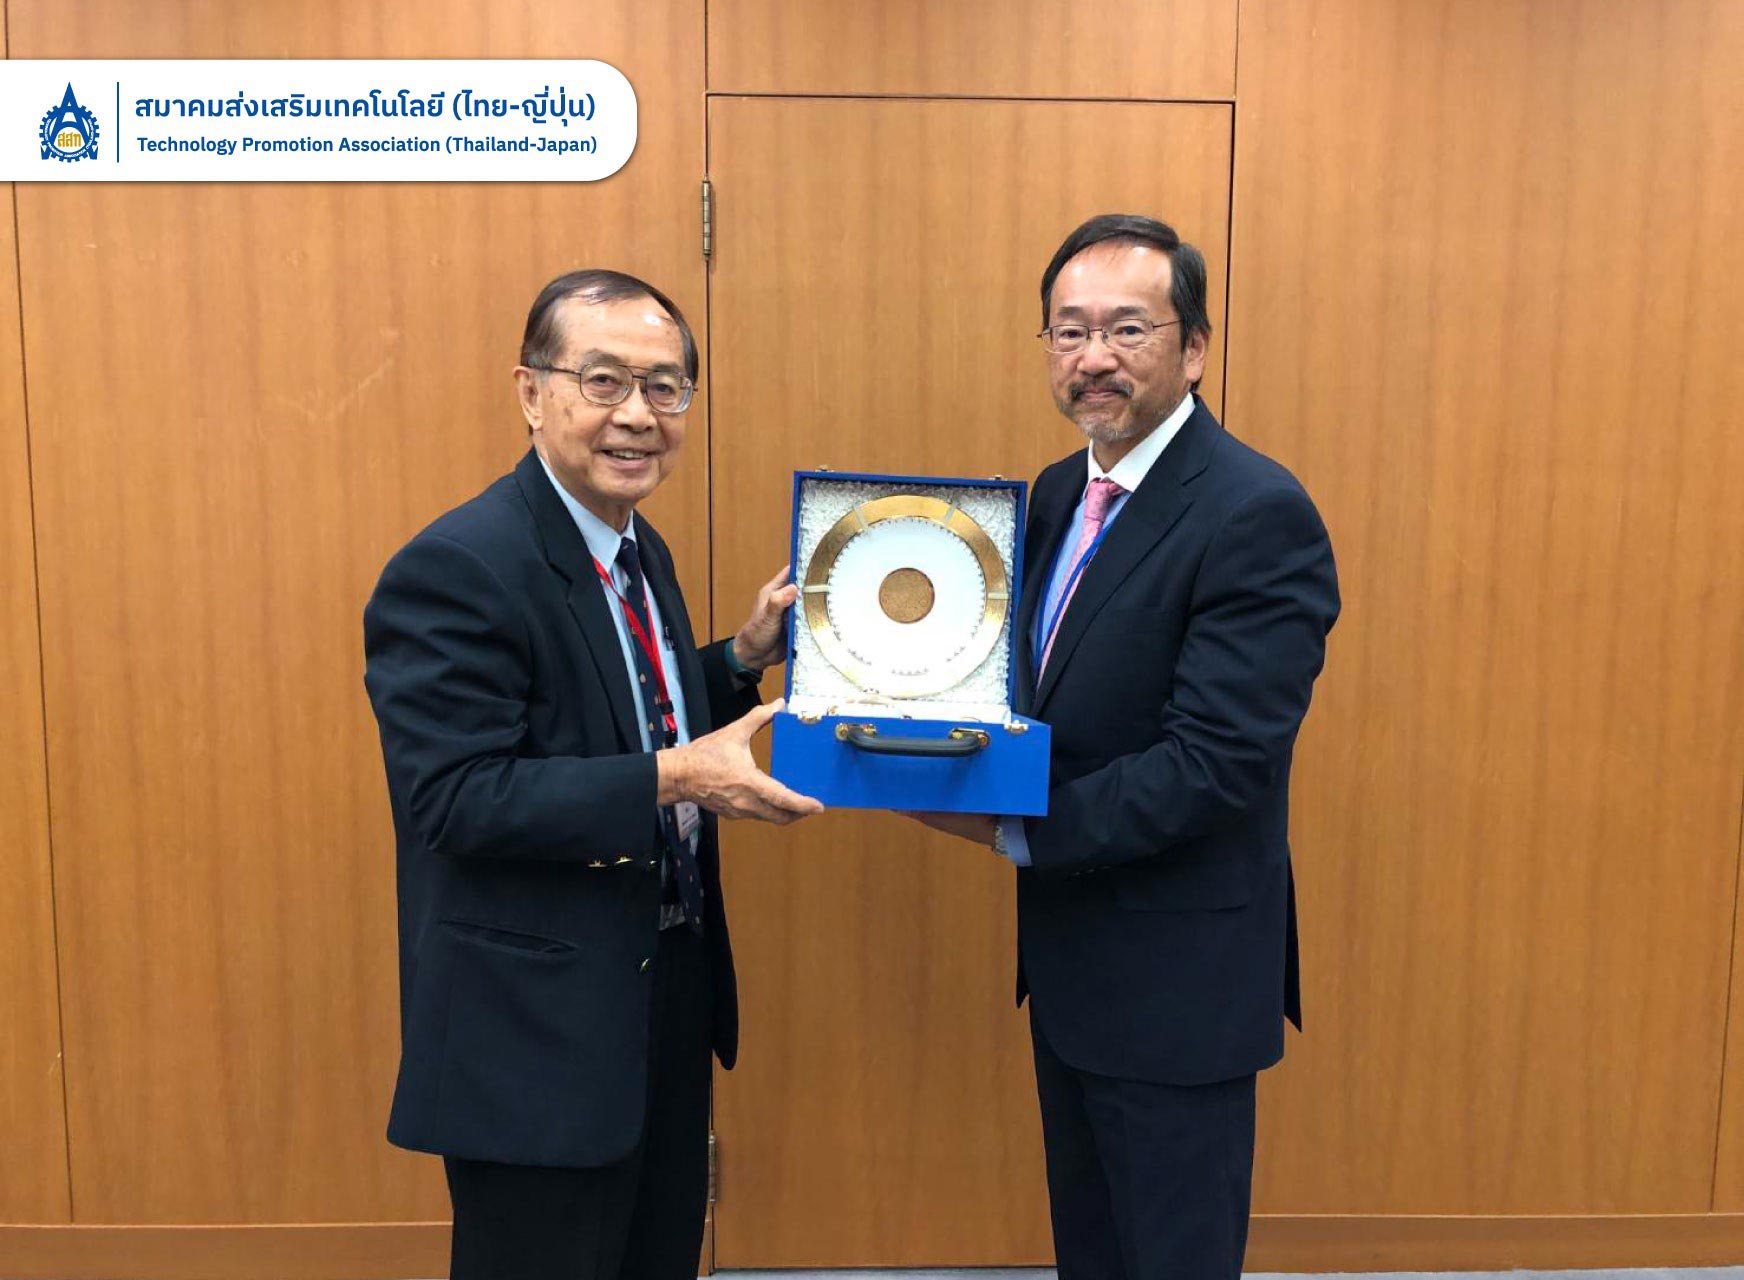 ส.ส.ท. เข้าพบ H.E. Mr. OTAKA Masato เพื่อแสดงความยินดีในวาระรับตำแหน่งเอกอัครราชทูตญี่ปุ่นประจำประเทศไทย